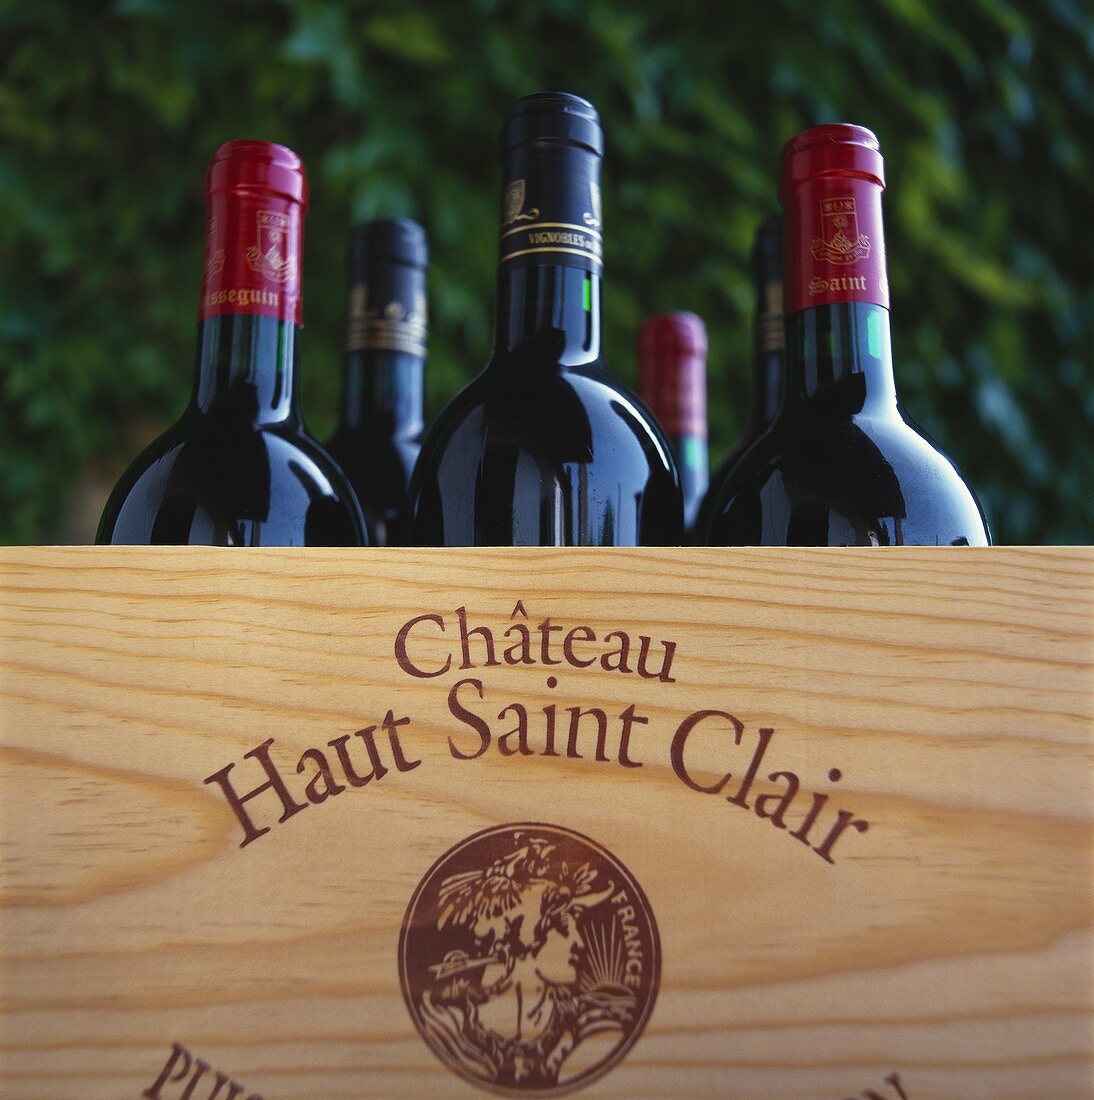 Weinflaschen vom Château Haut Saint Clair, Frankreich